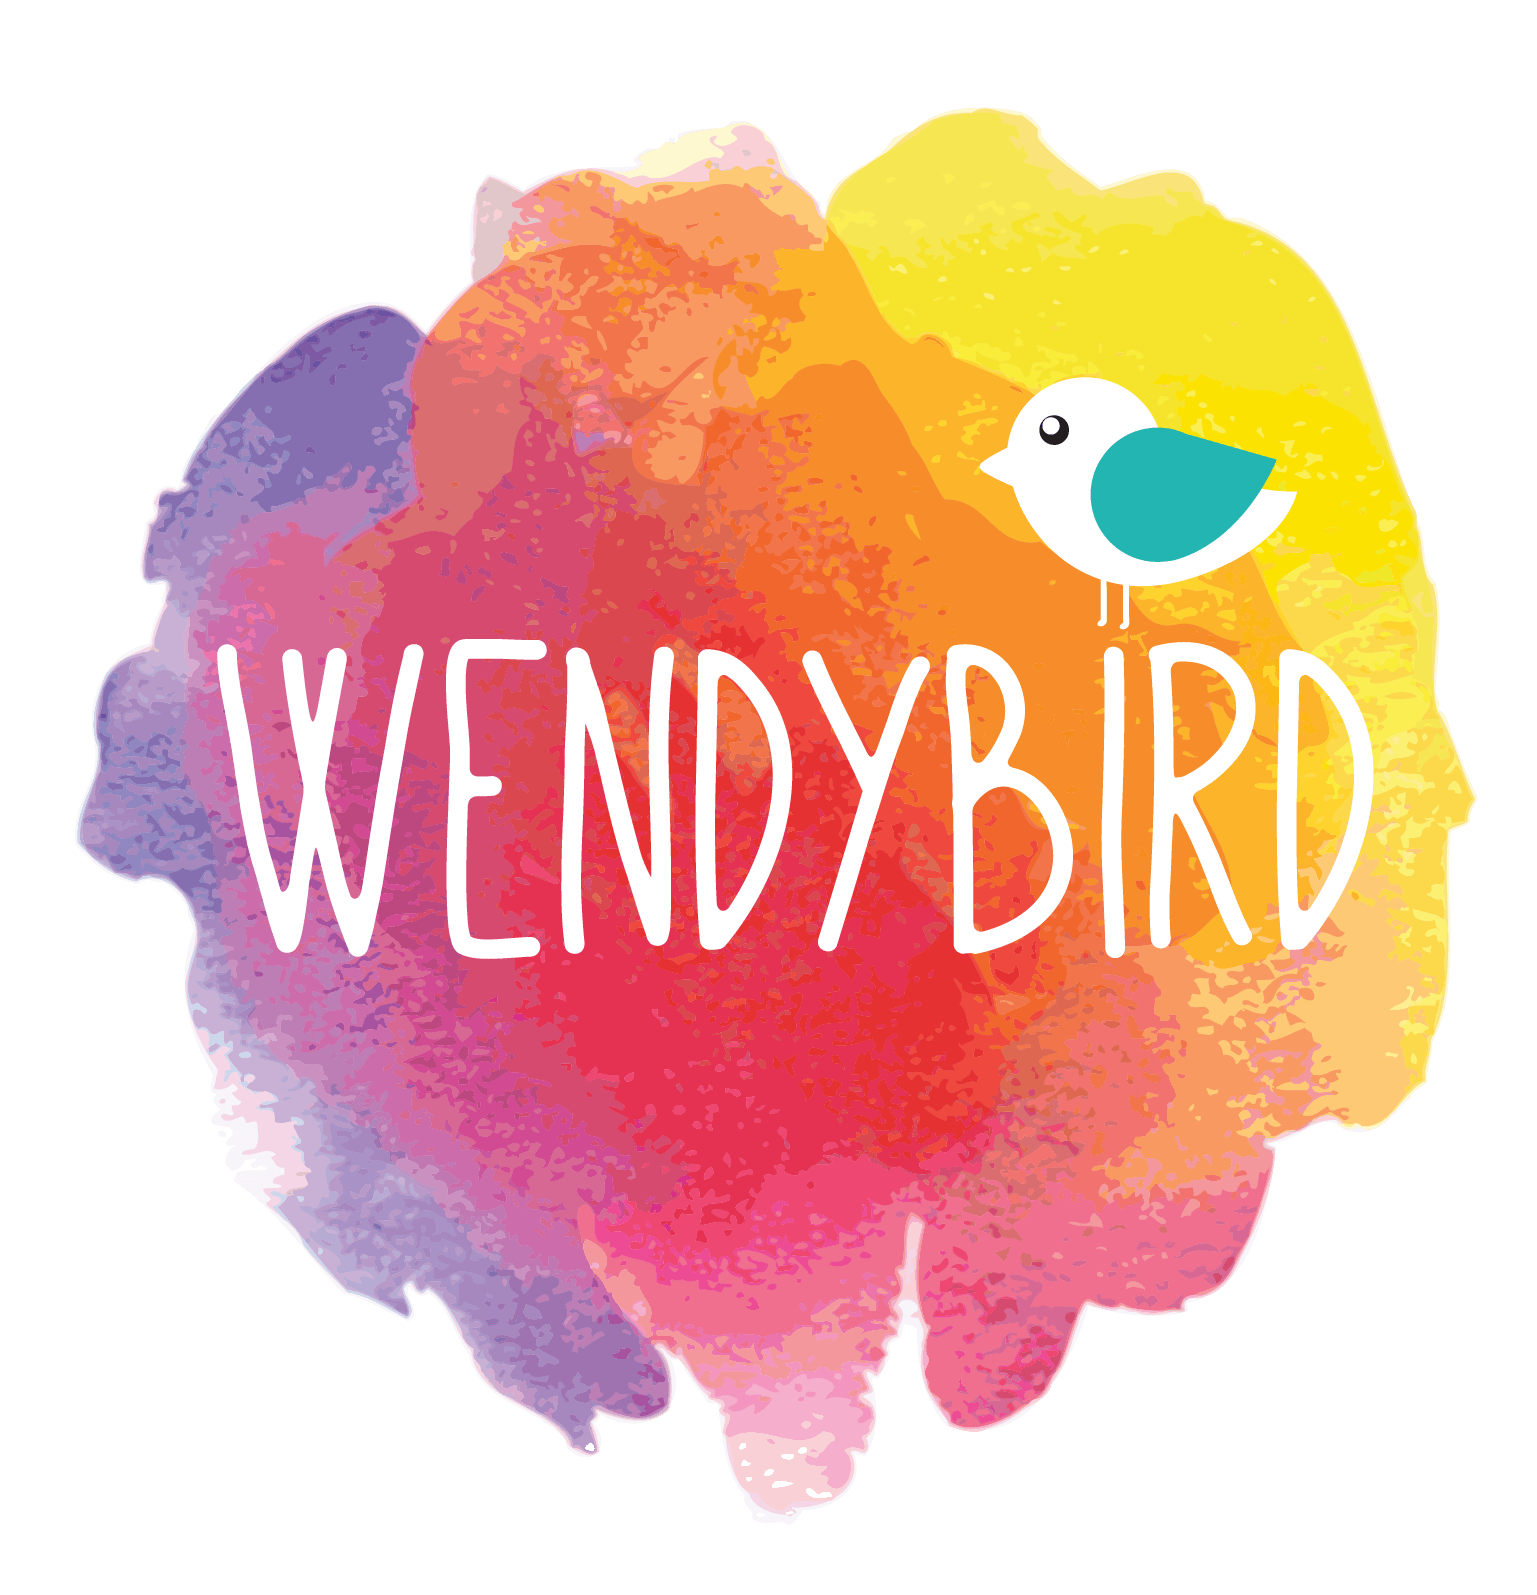 Wendybird logo